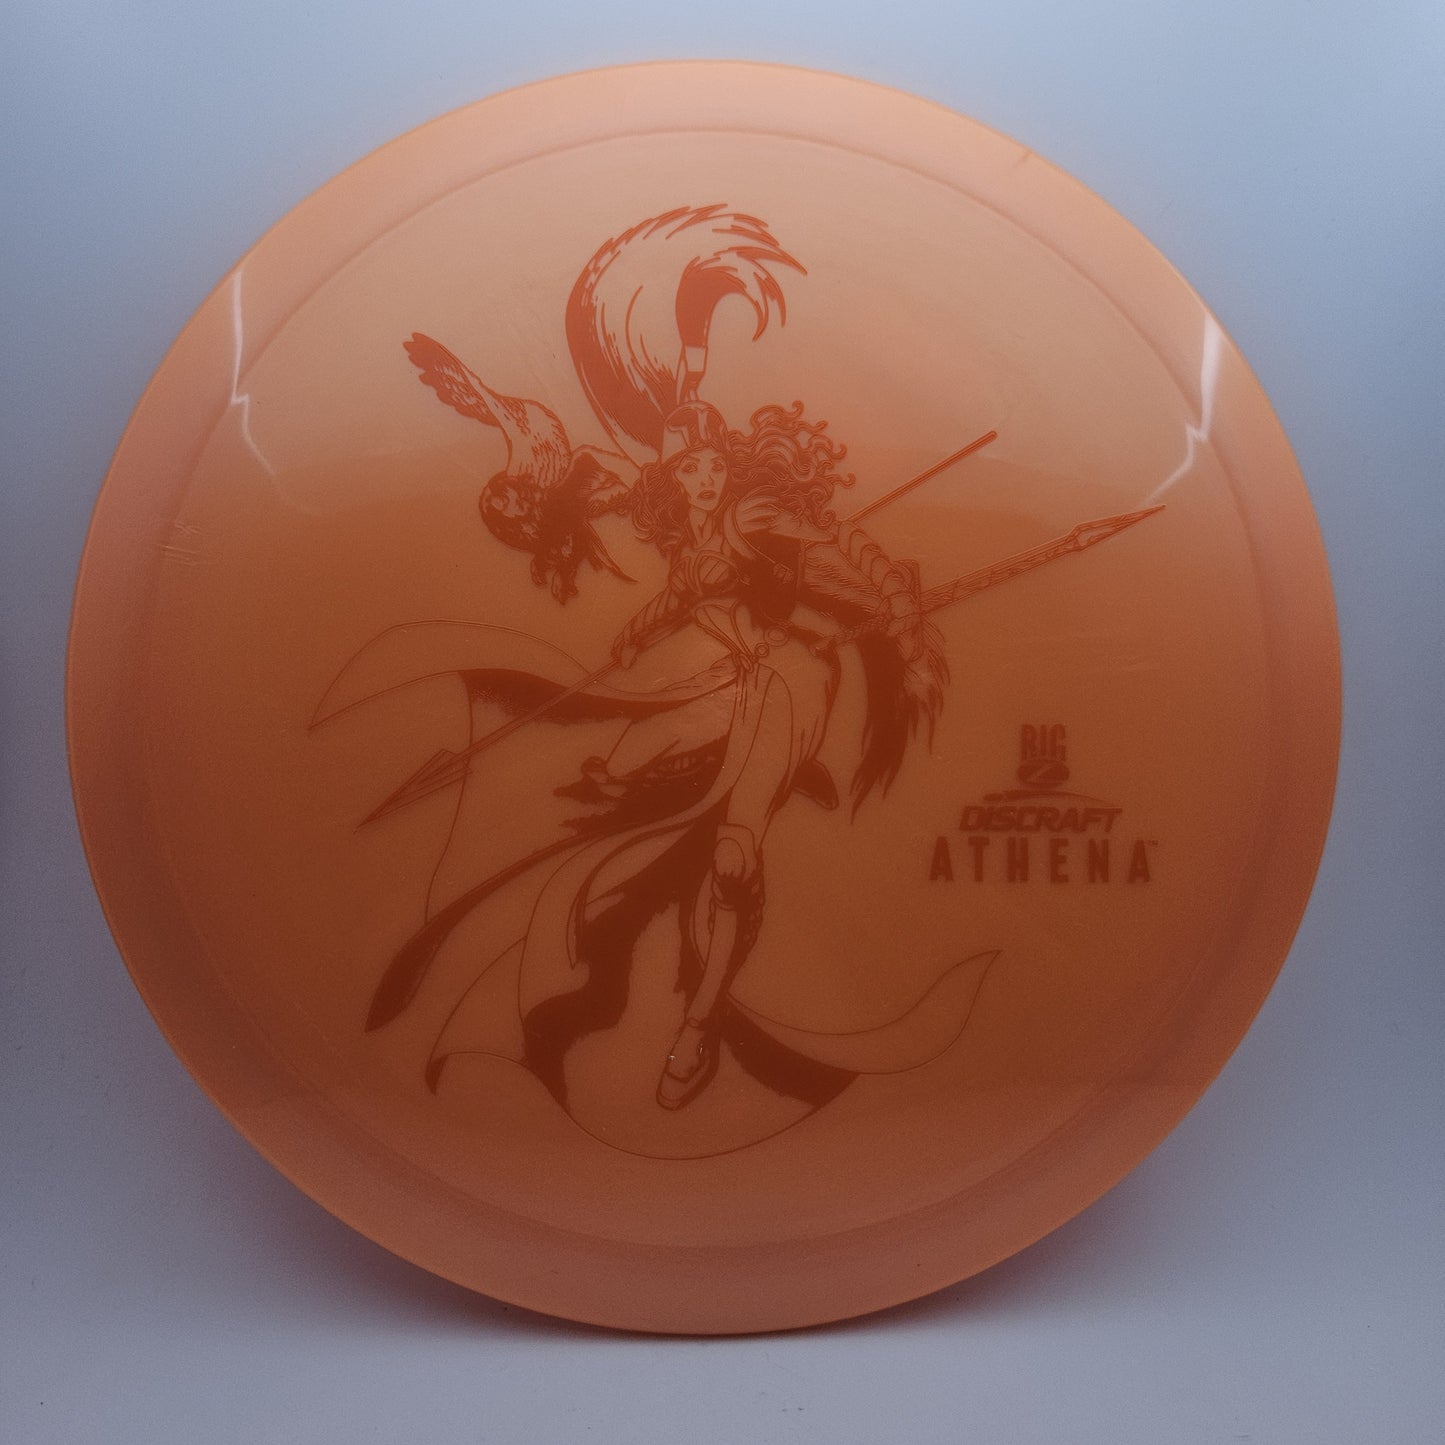 #7231 170-172g Orange Big Z Athena